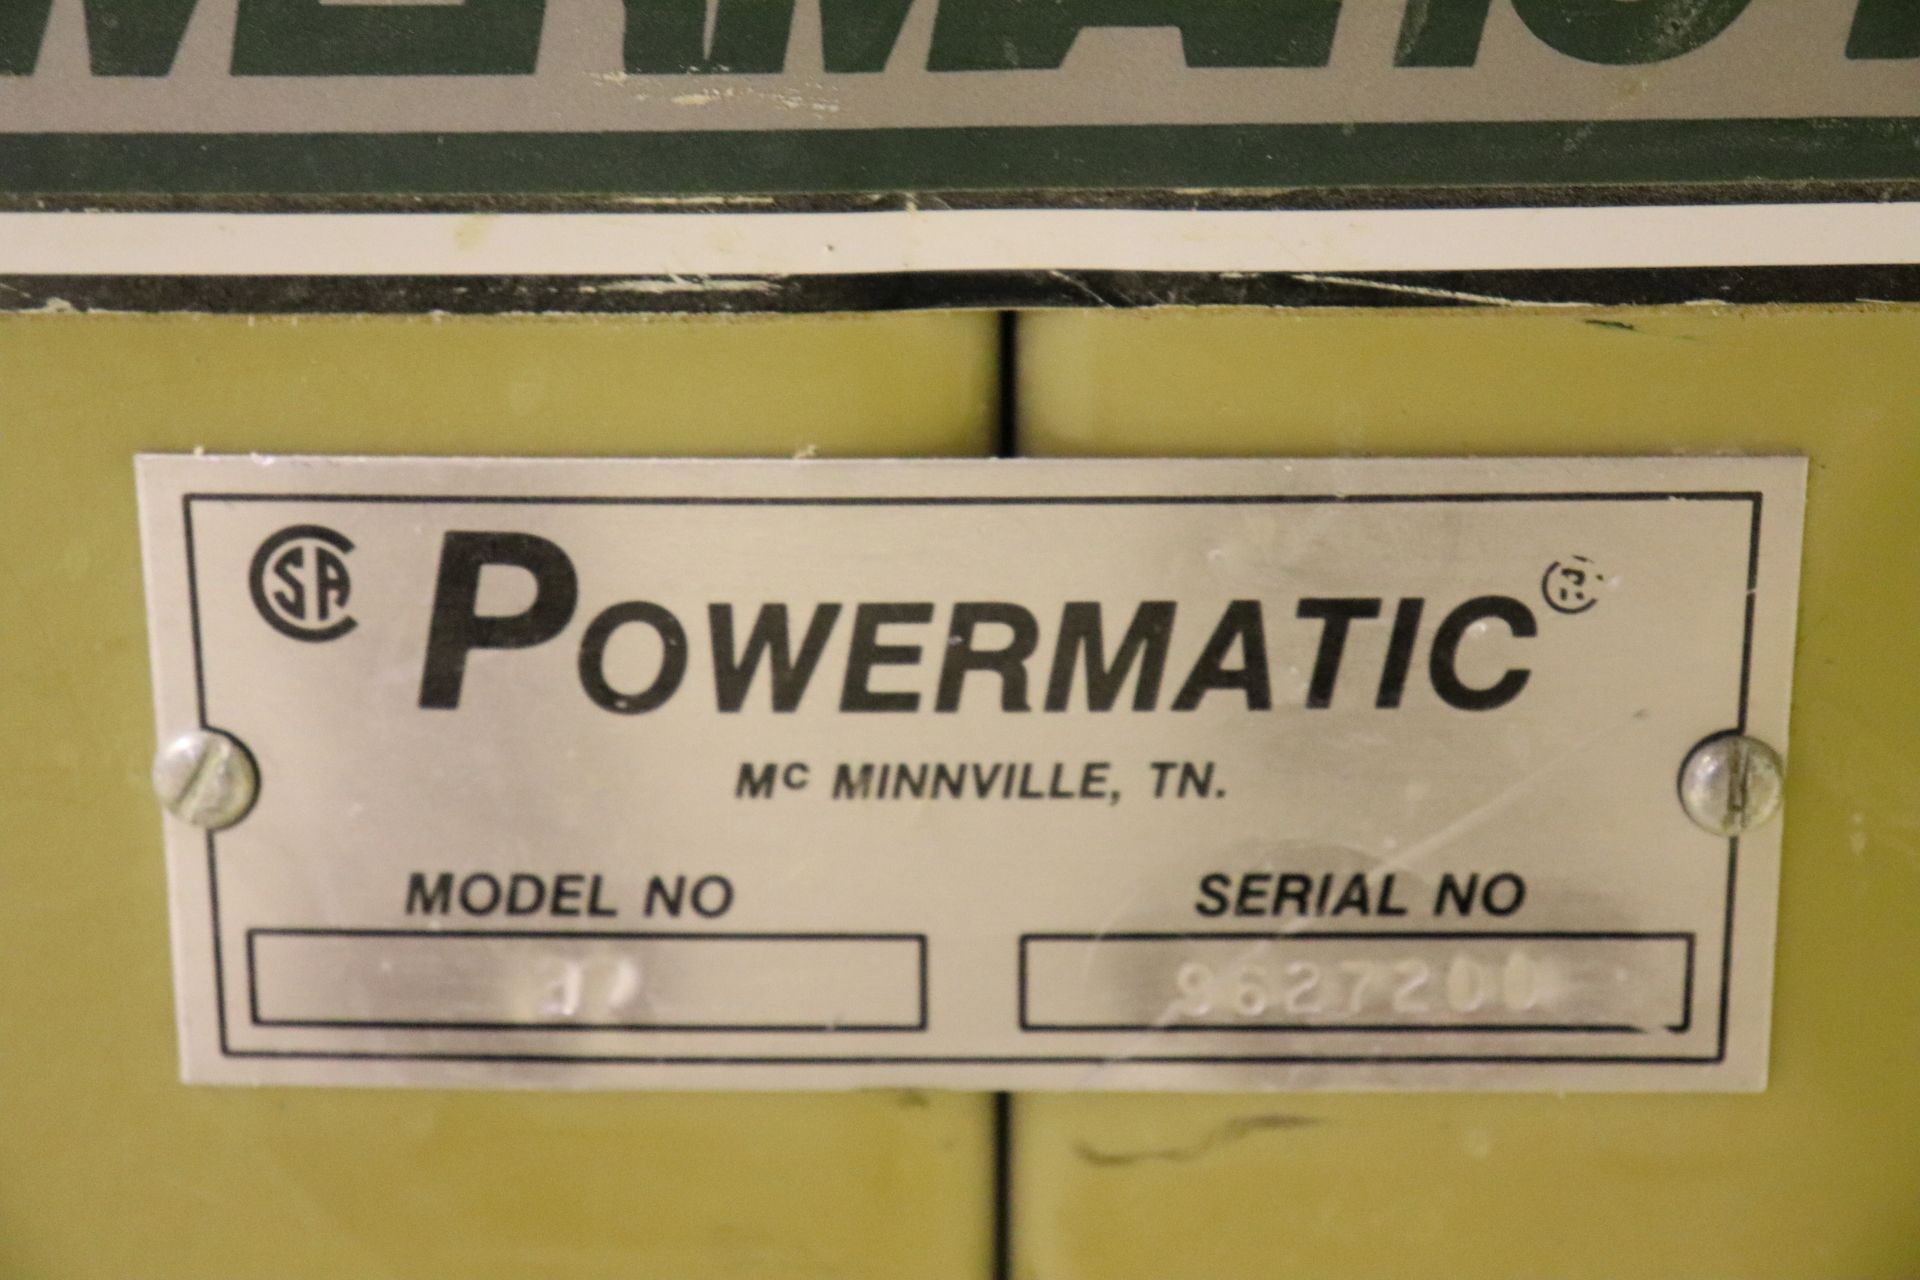 Powermatic model 27 shaper, 5 hp, serial 96277200 - Image 3 of 3